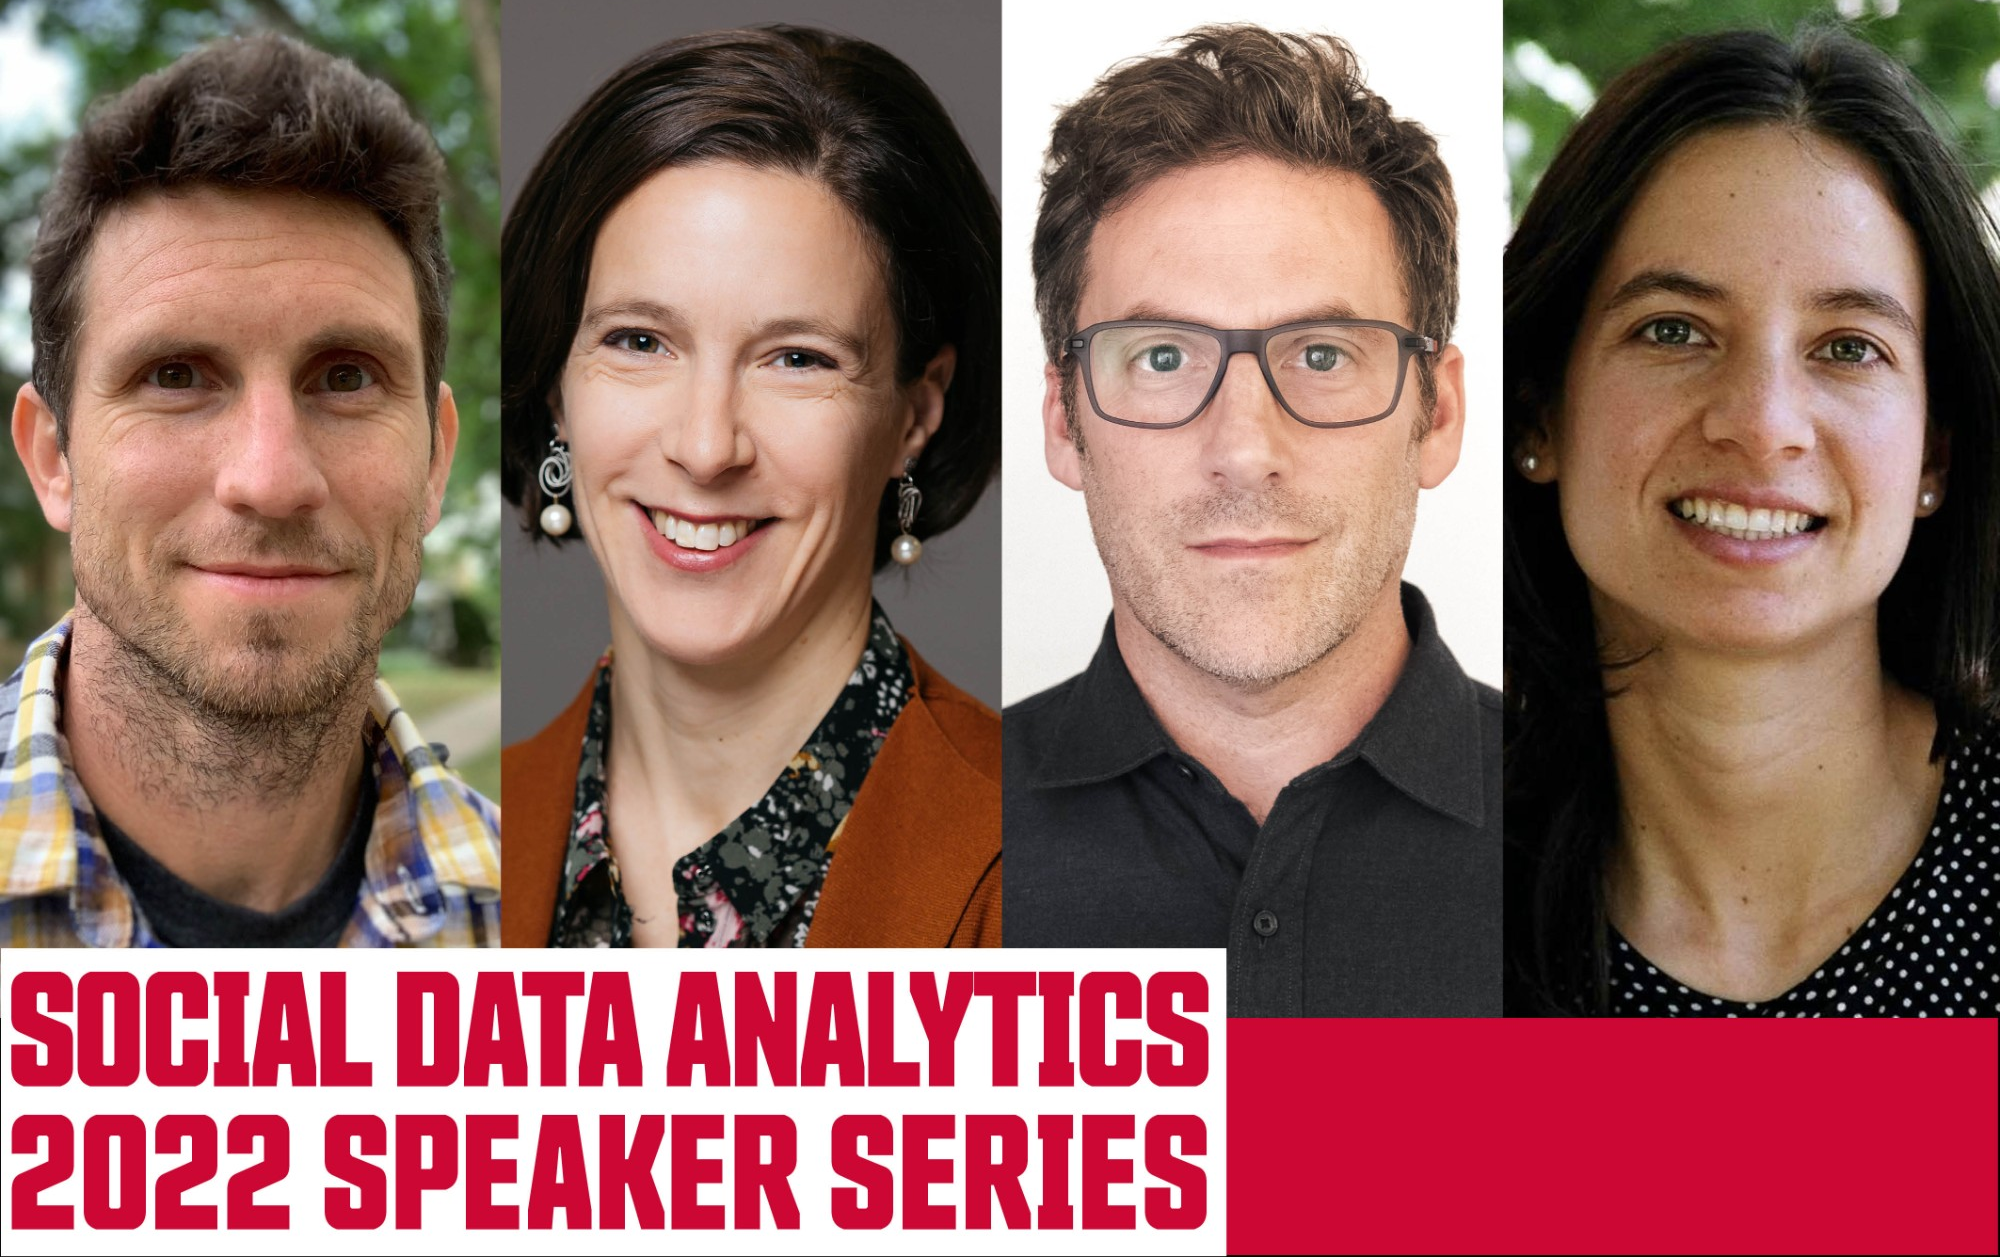 Social Data Analytics speaker series announced for 2022